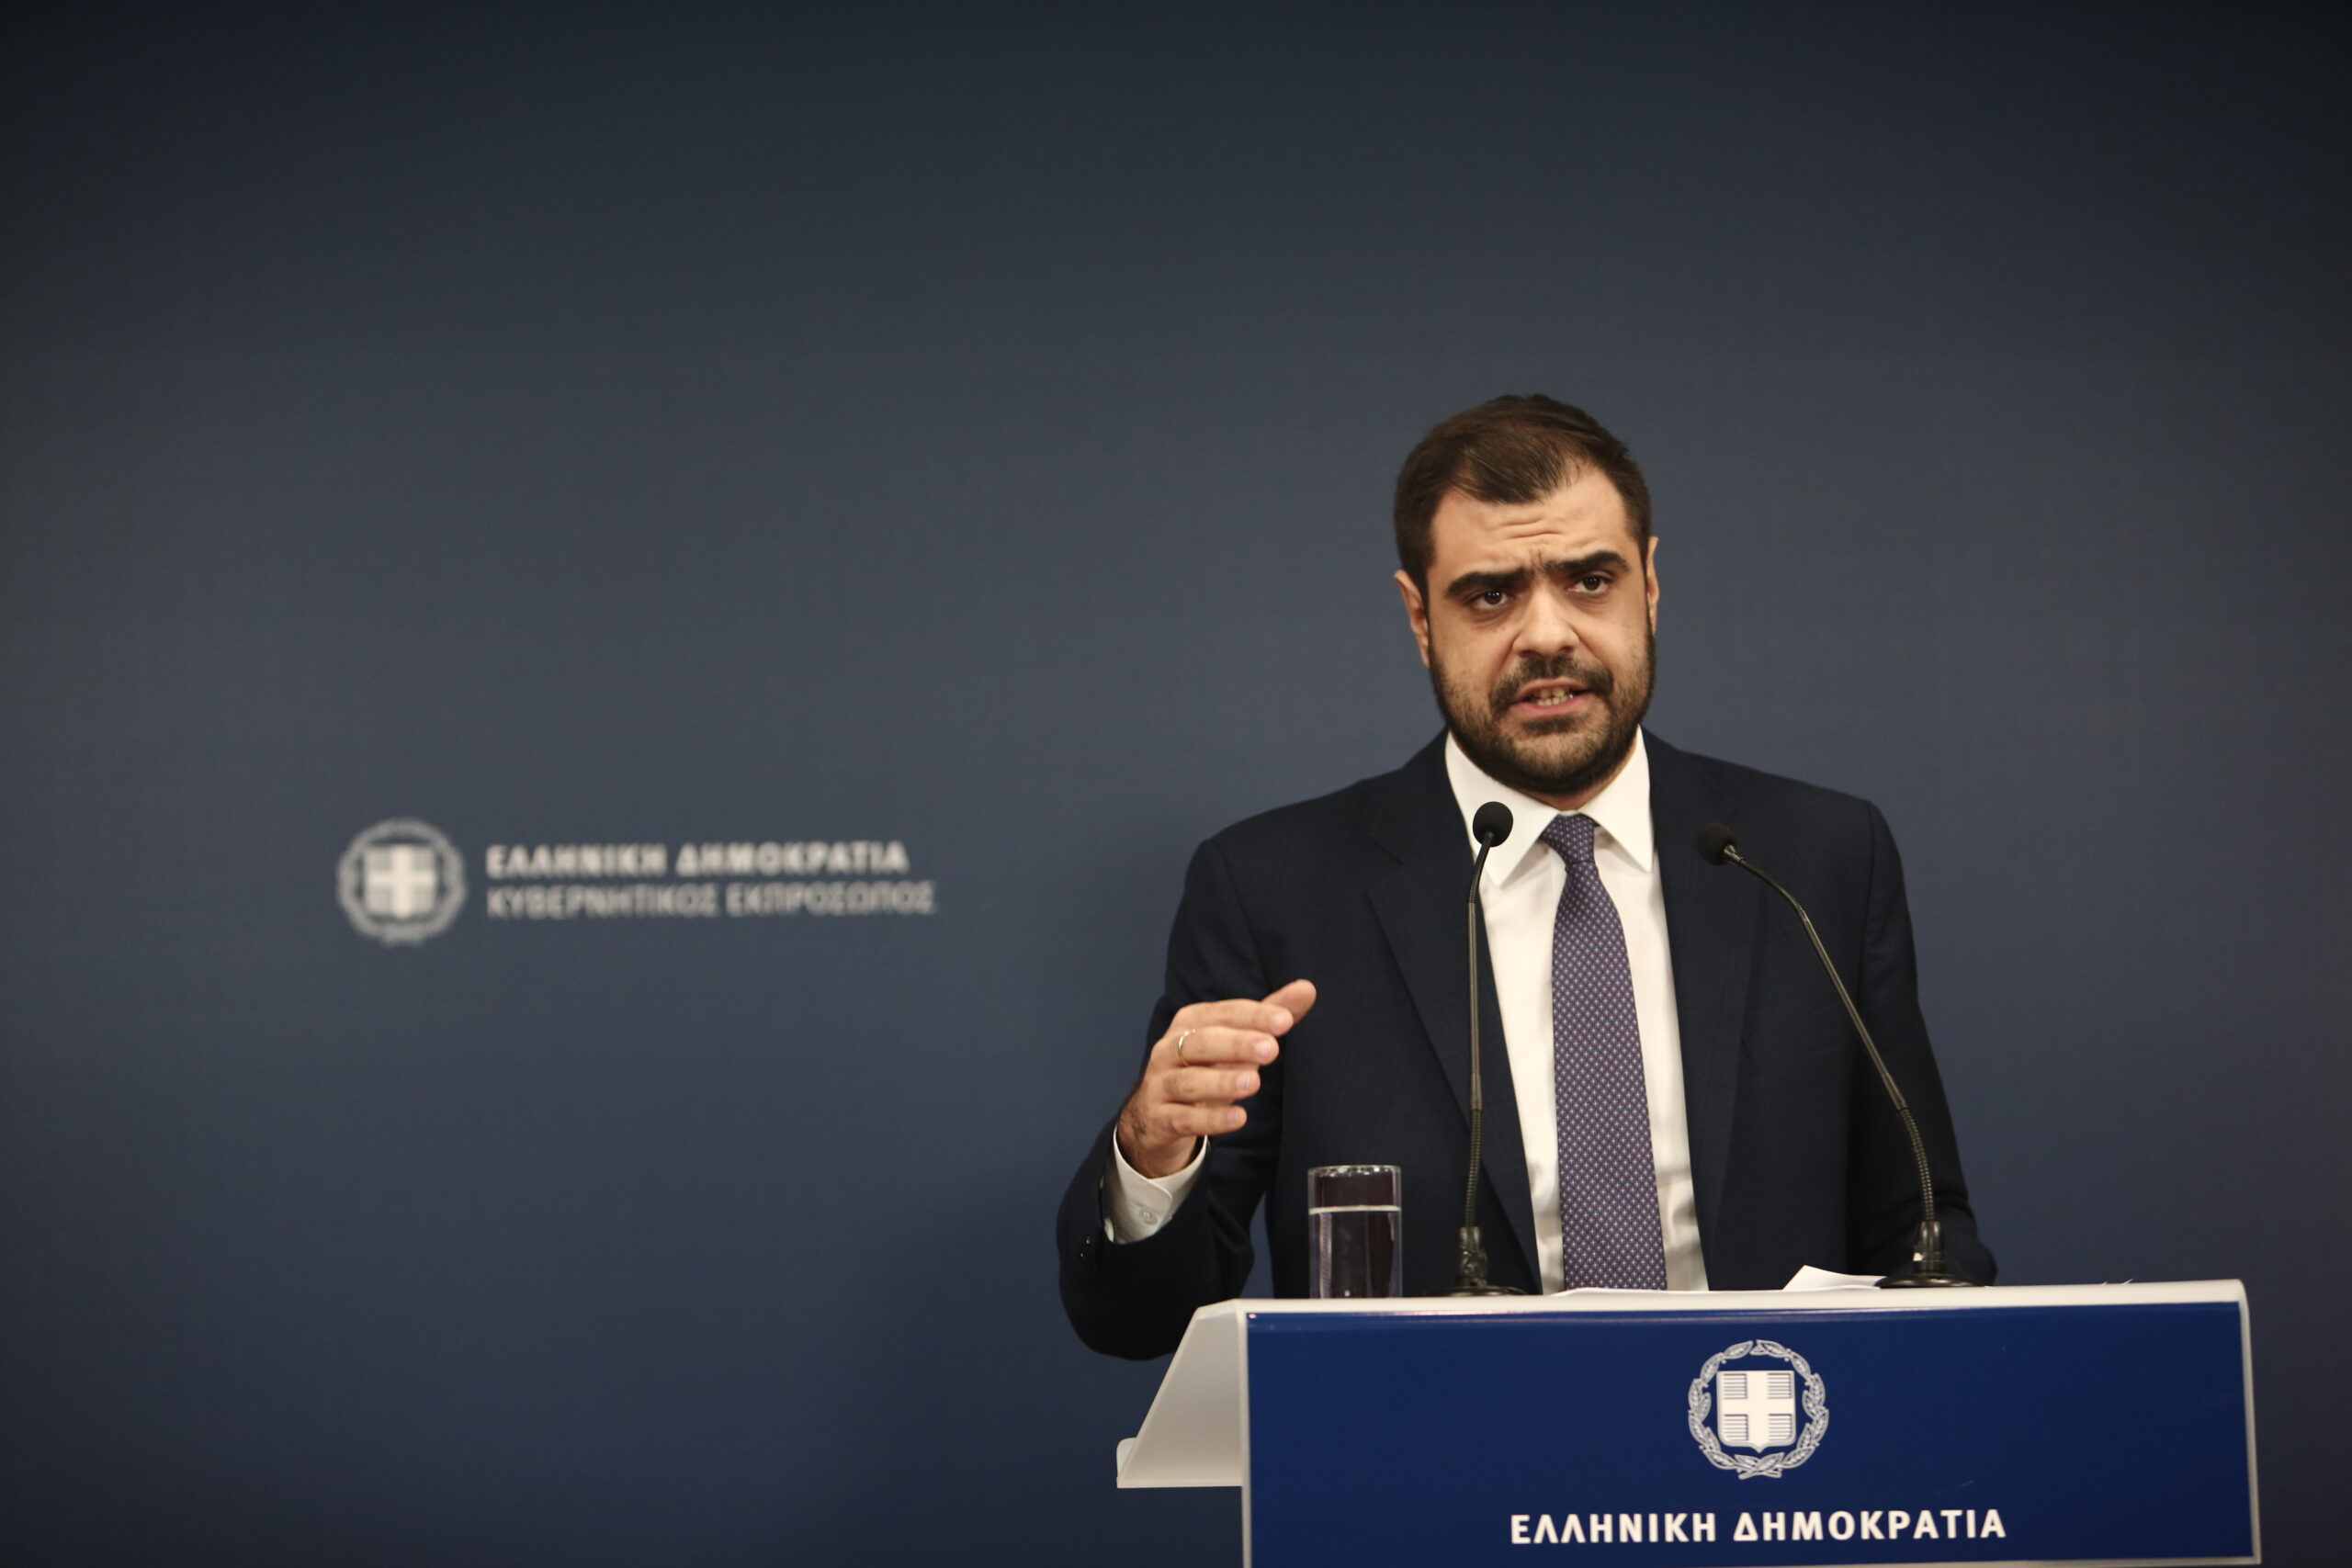 Π. Μαρινάκης για επιστολική ψήφο: Δυστυχώς η αντιπολίτευση απέδειξε ότι η αρχική συναίνεση προς το νομοσχέδιο ήταν προσχηματική